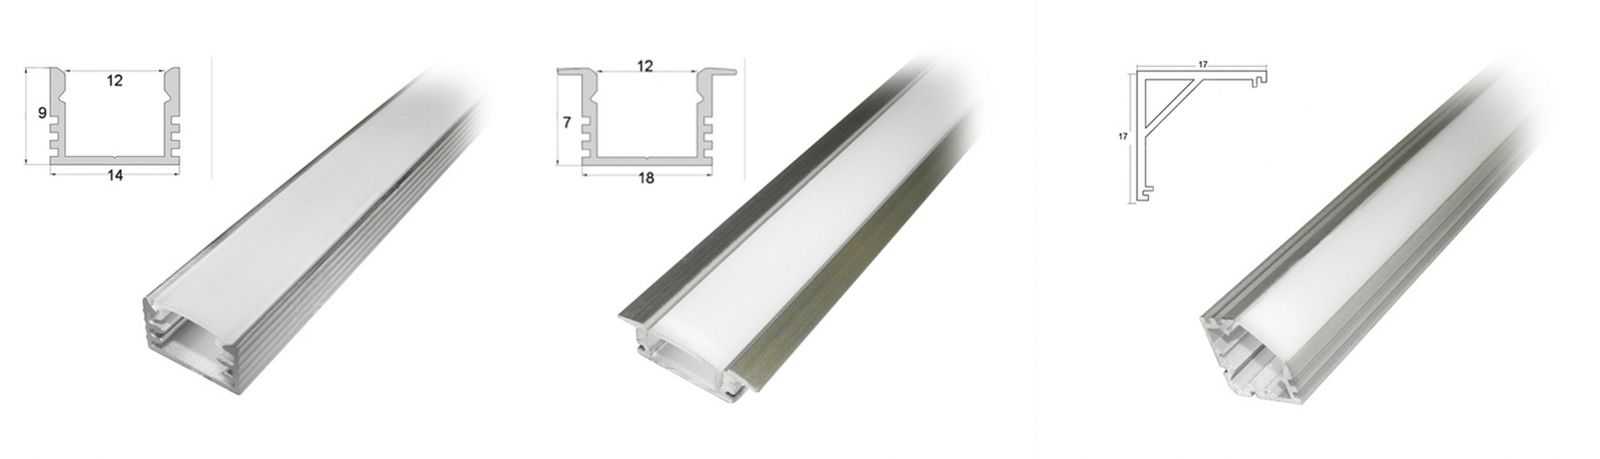 Профили для светодиодных лент: накладные для диодной led-подсветки и другие профили для световых линий, черные и белые, квадратные и круглые